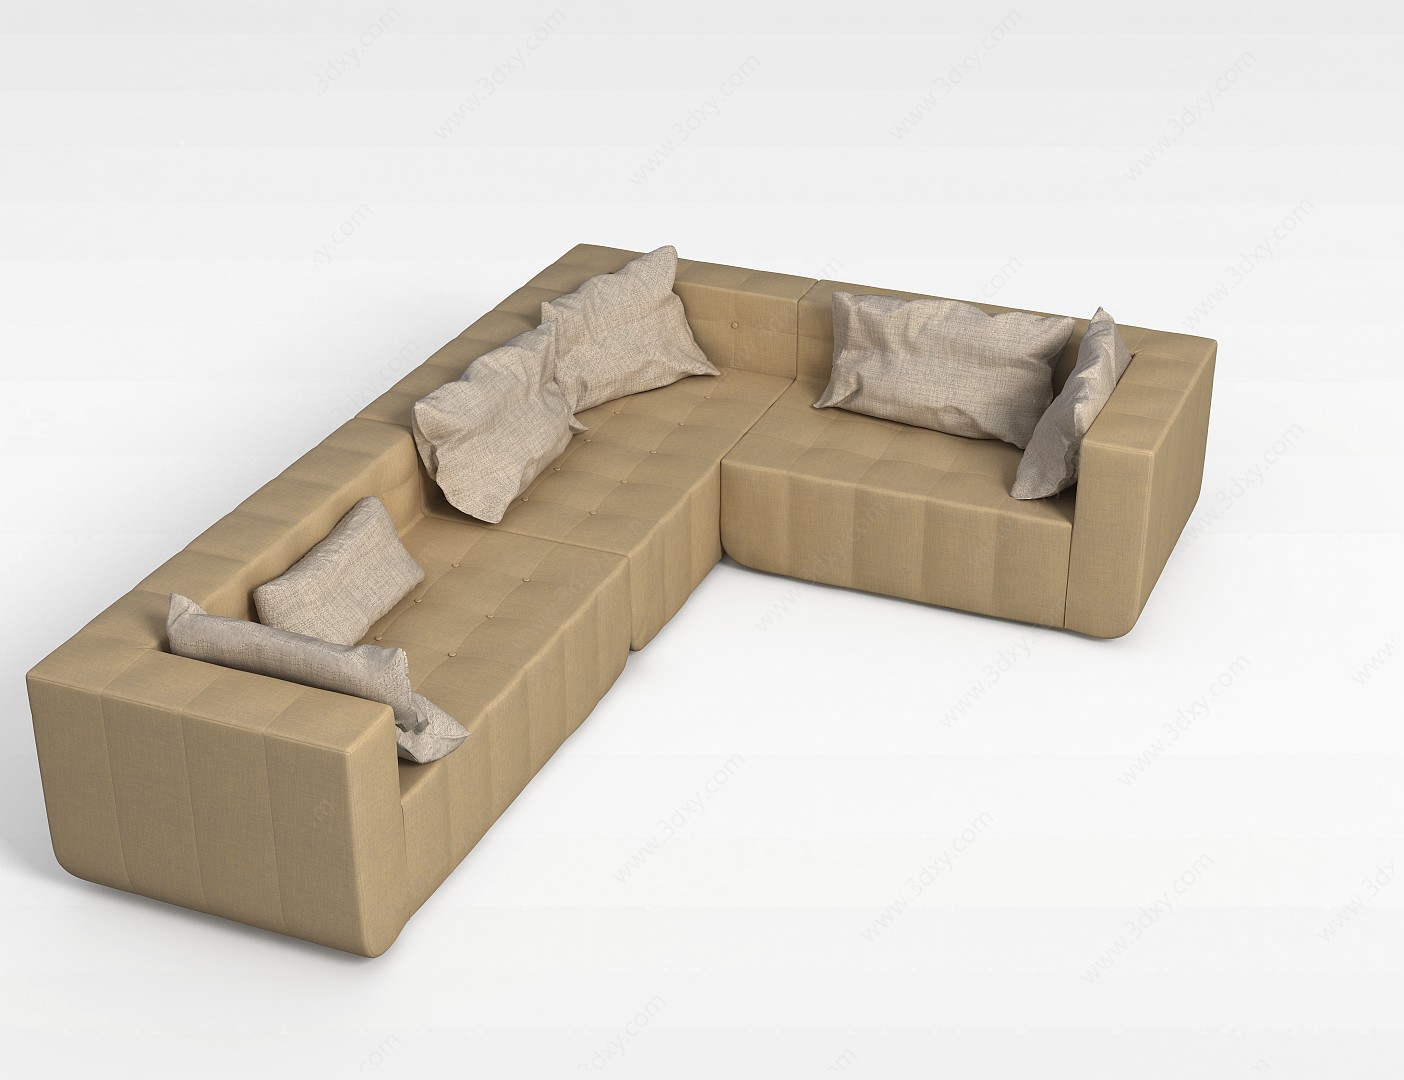 土色转角沙发3D模型